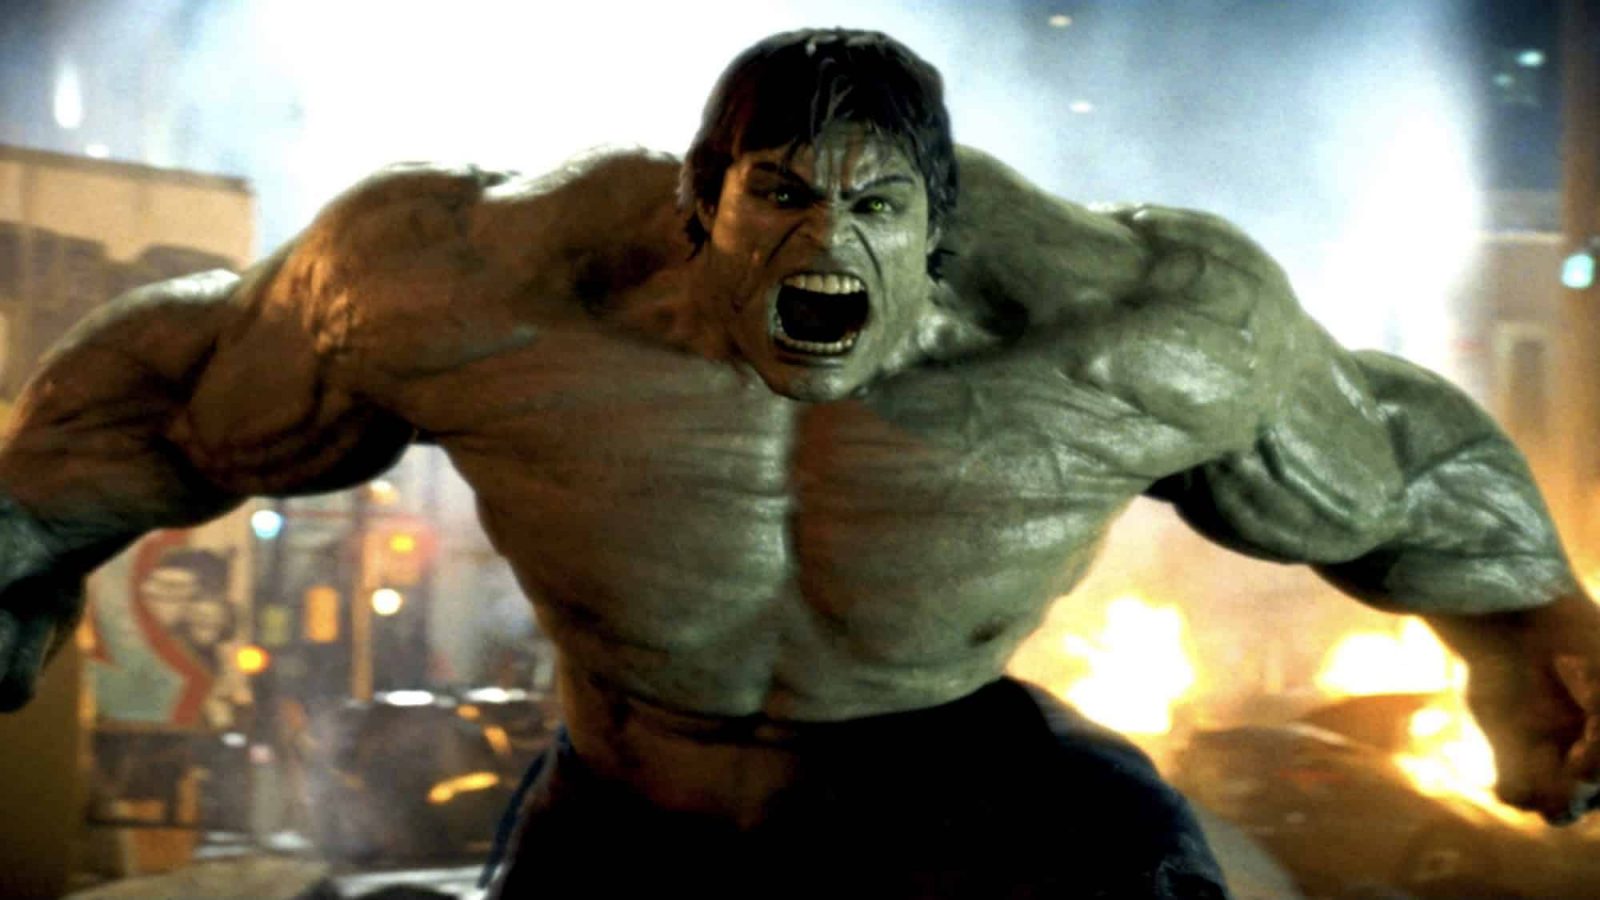 den incidentible-Hulk-gets-angel-i-fas-1-av-marvel-filmatiska universitetet